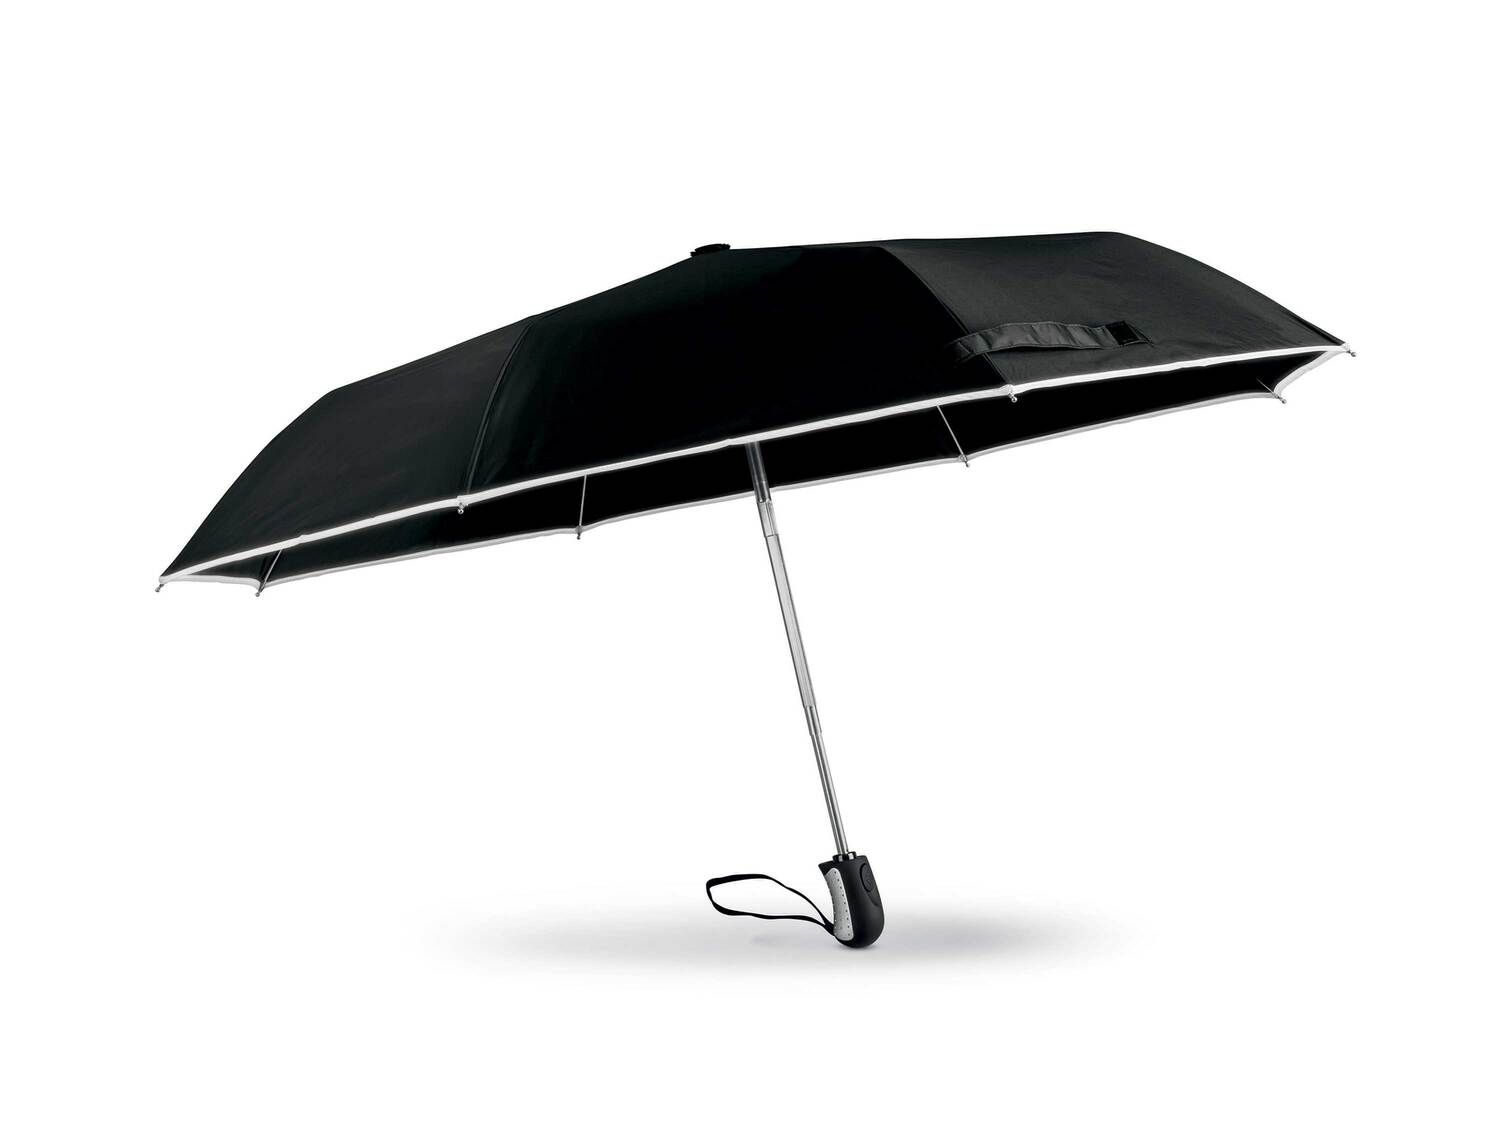 Parapluie de poche , le prix 5.99 € 
- Ø ouvert : env. 95 cm
- Pratique ! Bord ...